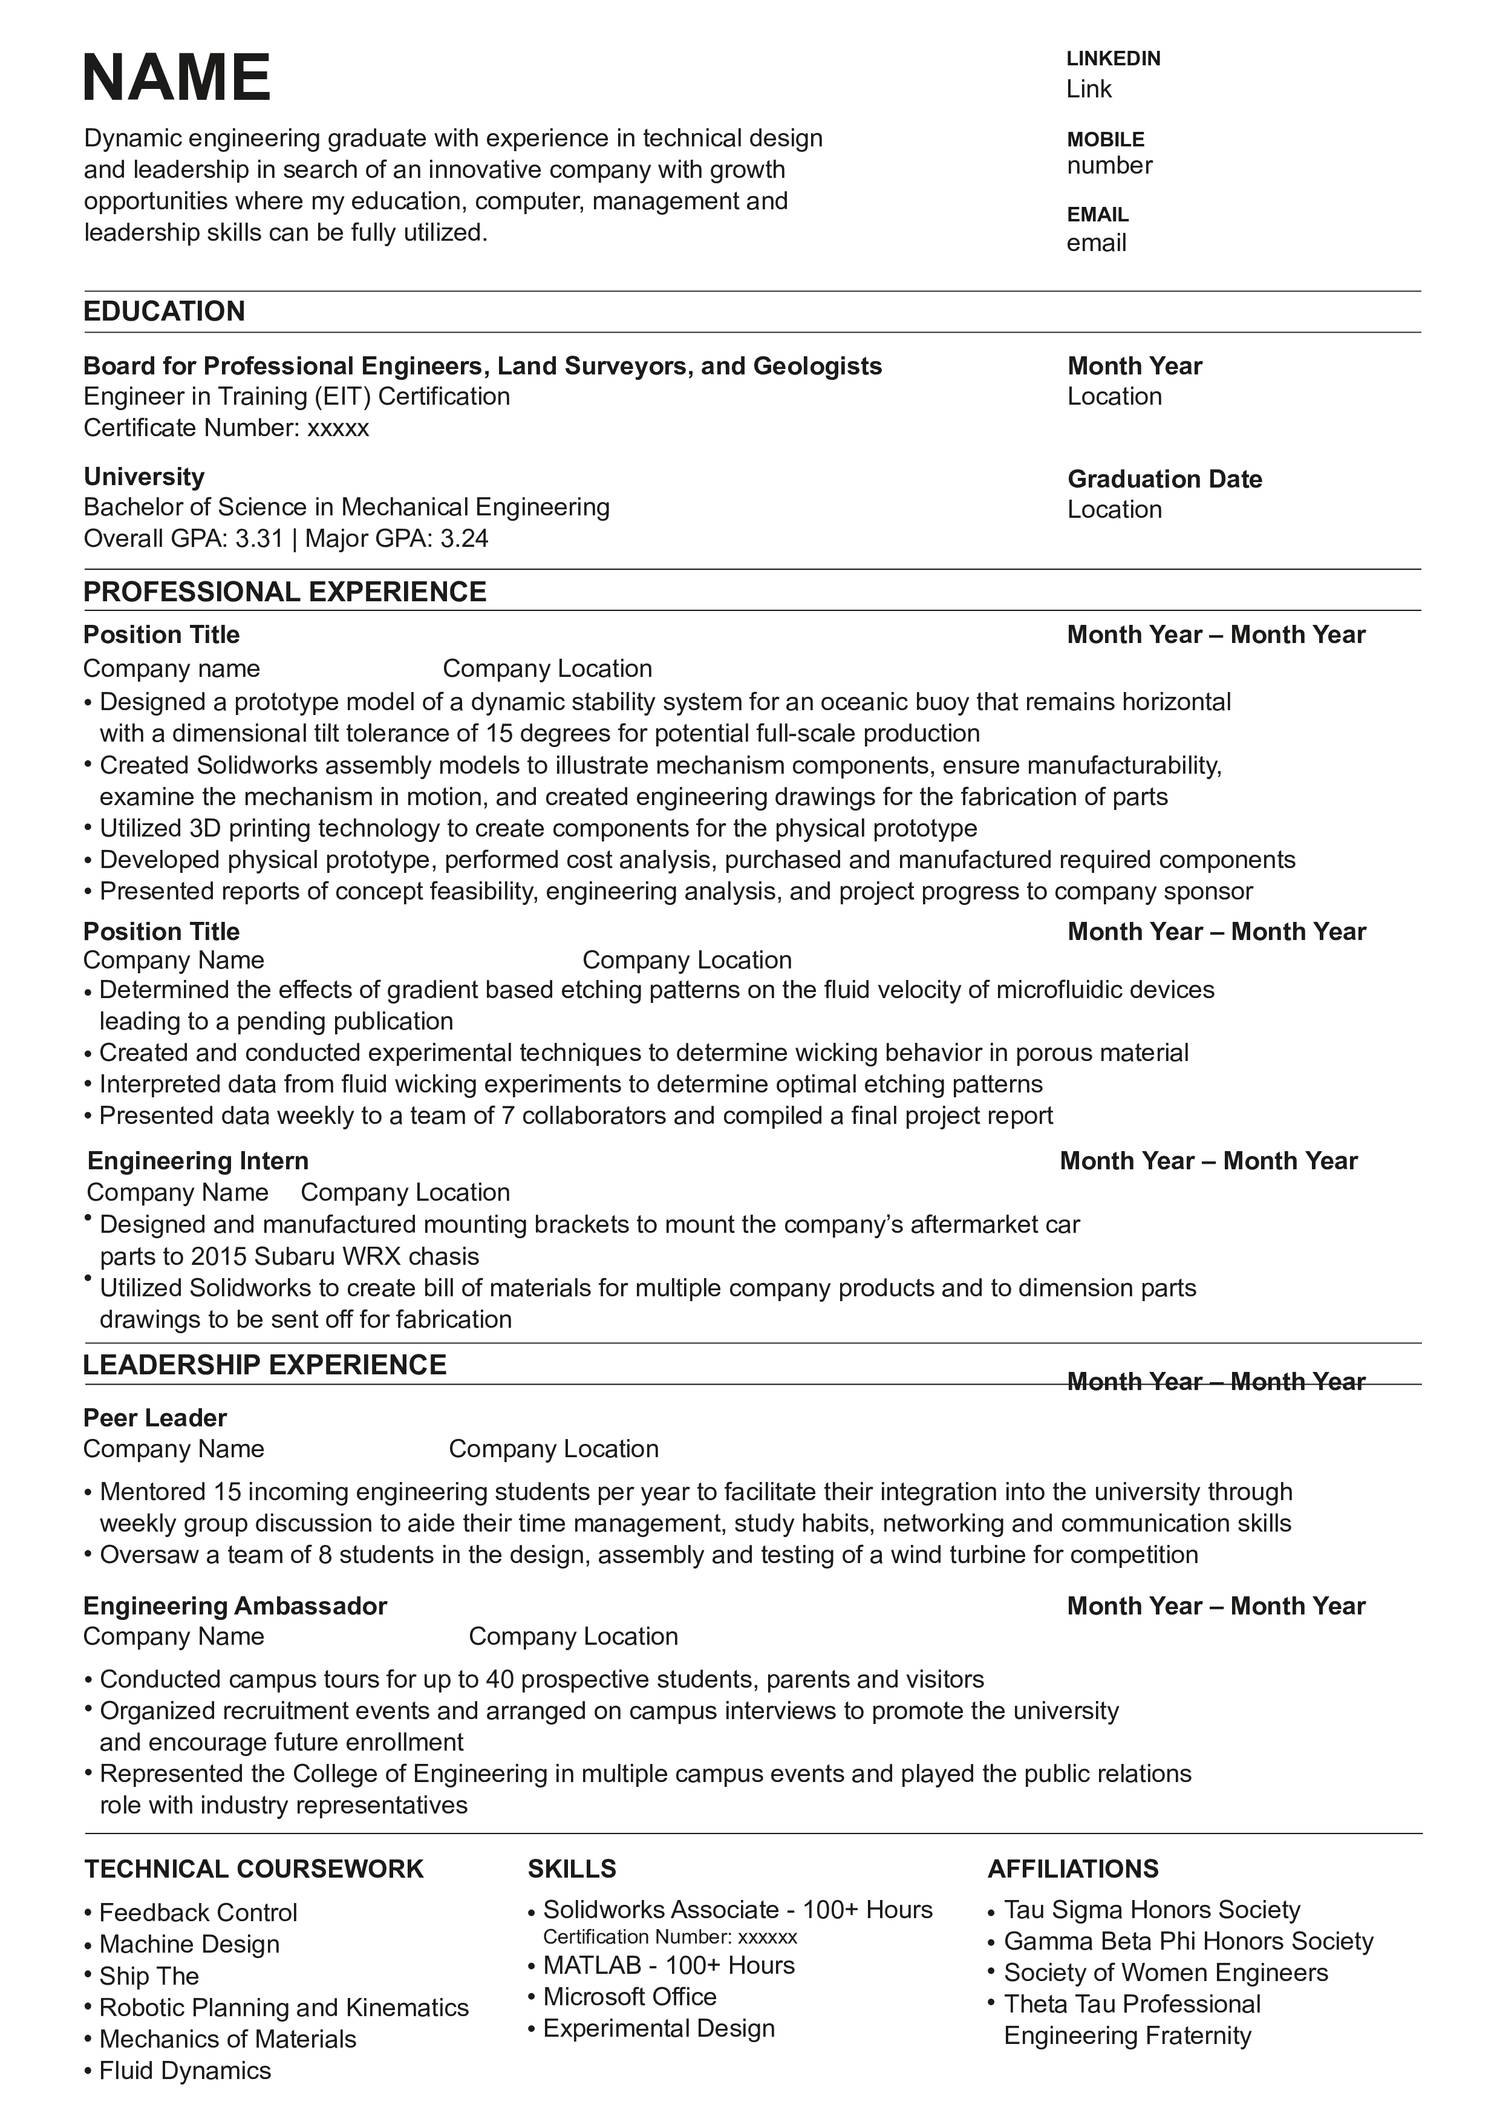 resume-edit-pdf-docdroid